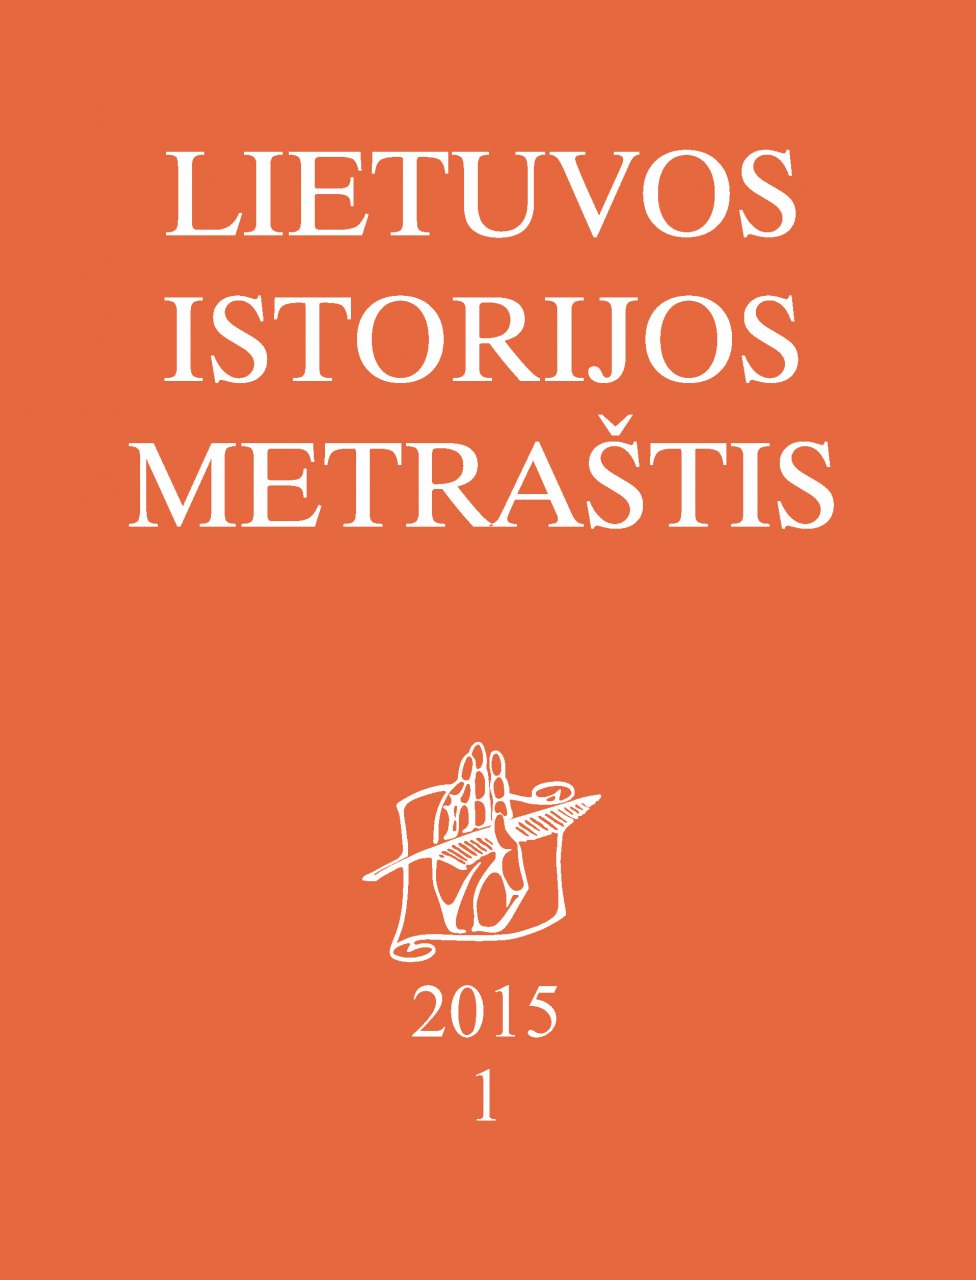 Lietuvos istorijos metraštis 2015 metai 1